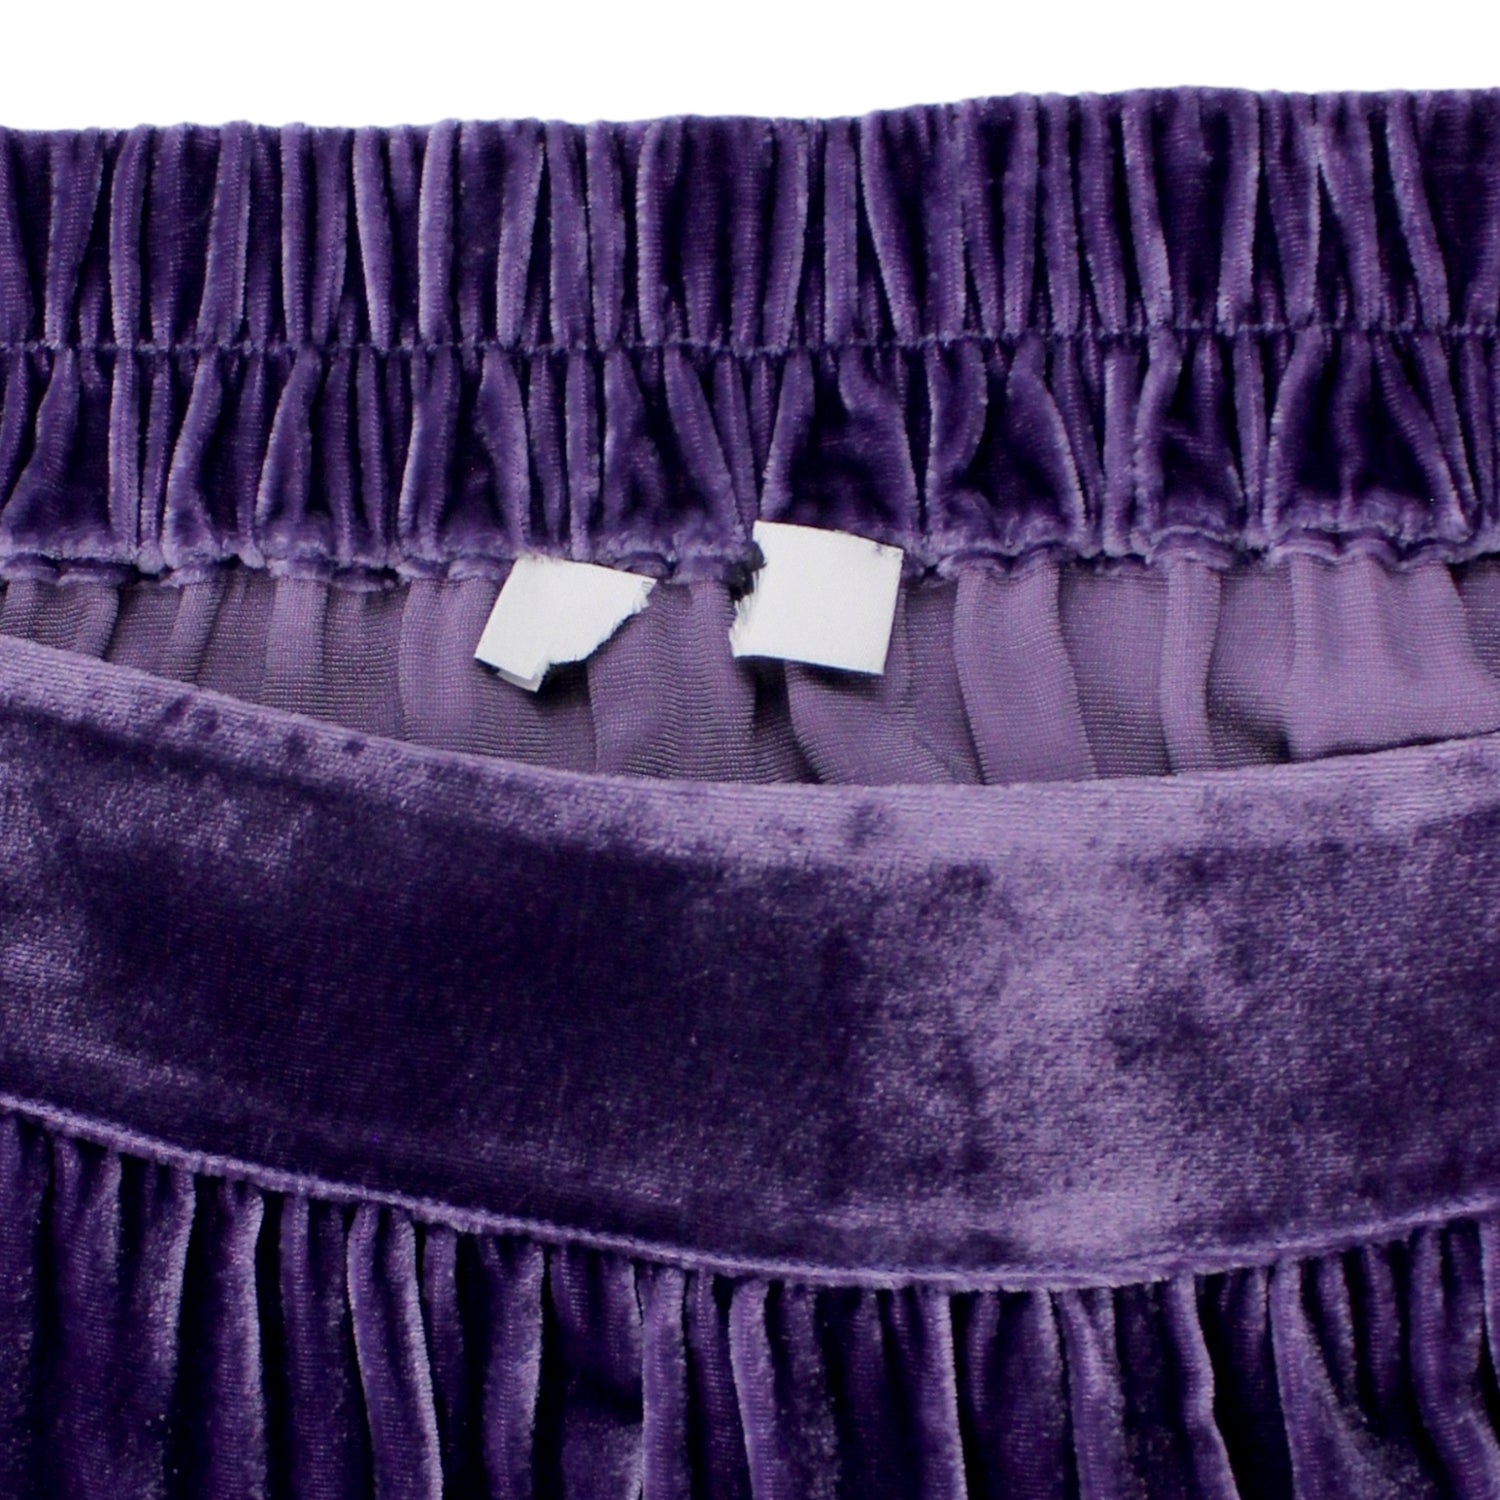 NRBY Purple Velvet Midi Skirt - Sample